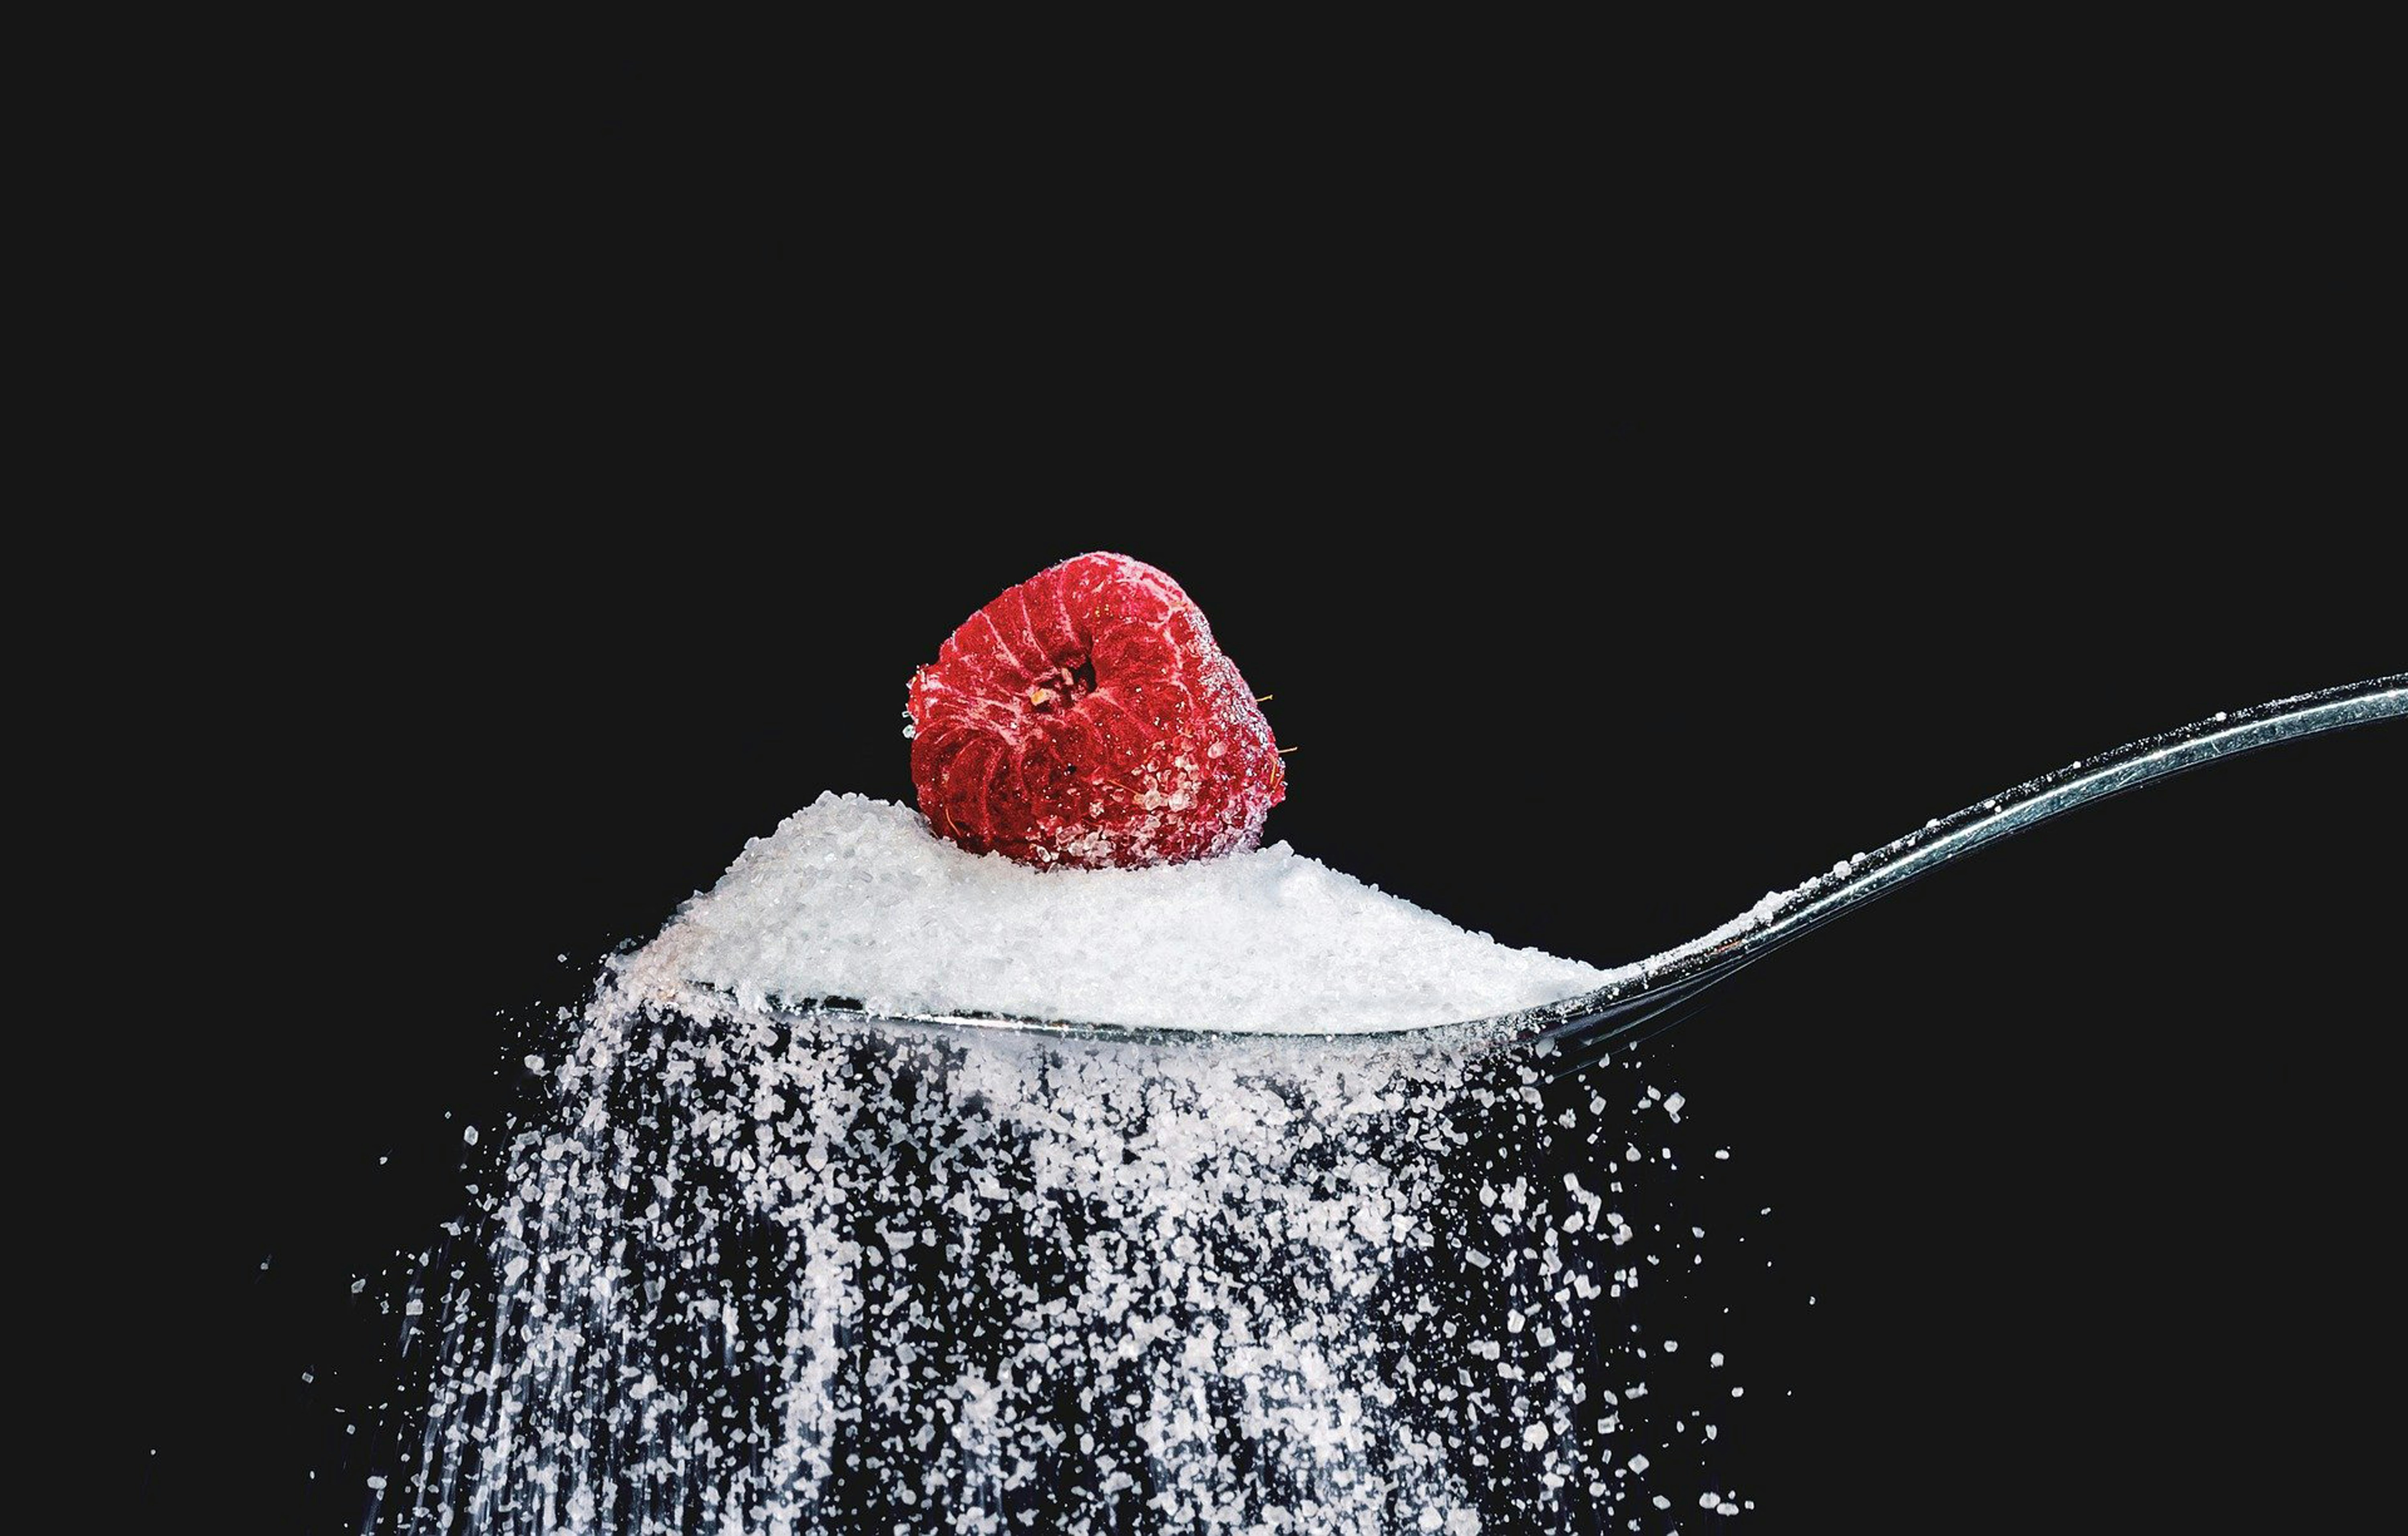 Appinio-Studie zur Zuckersteuer: Das wünschen sich die Deutschen